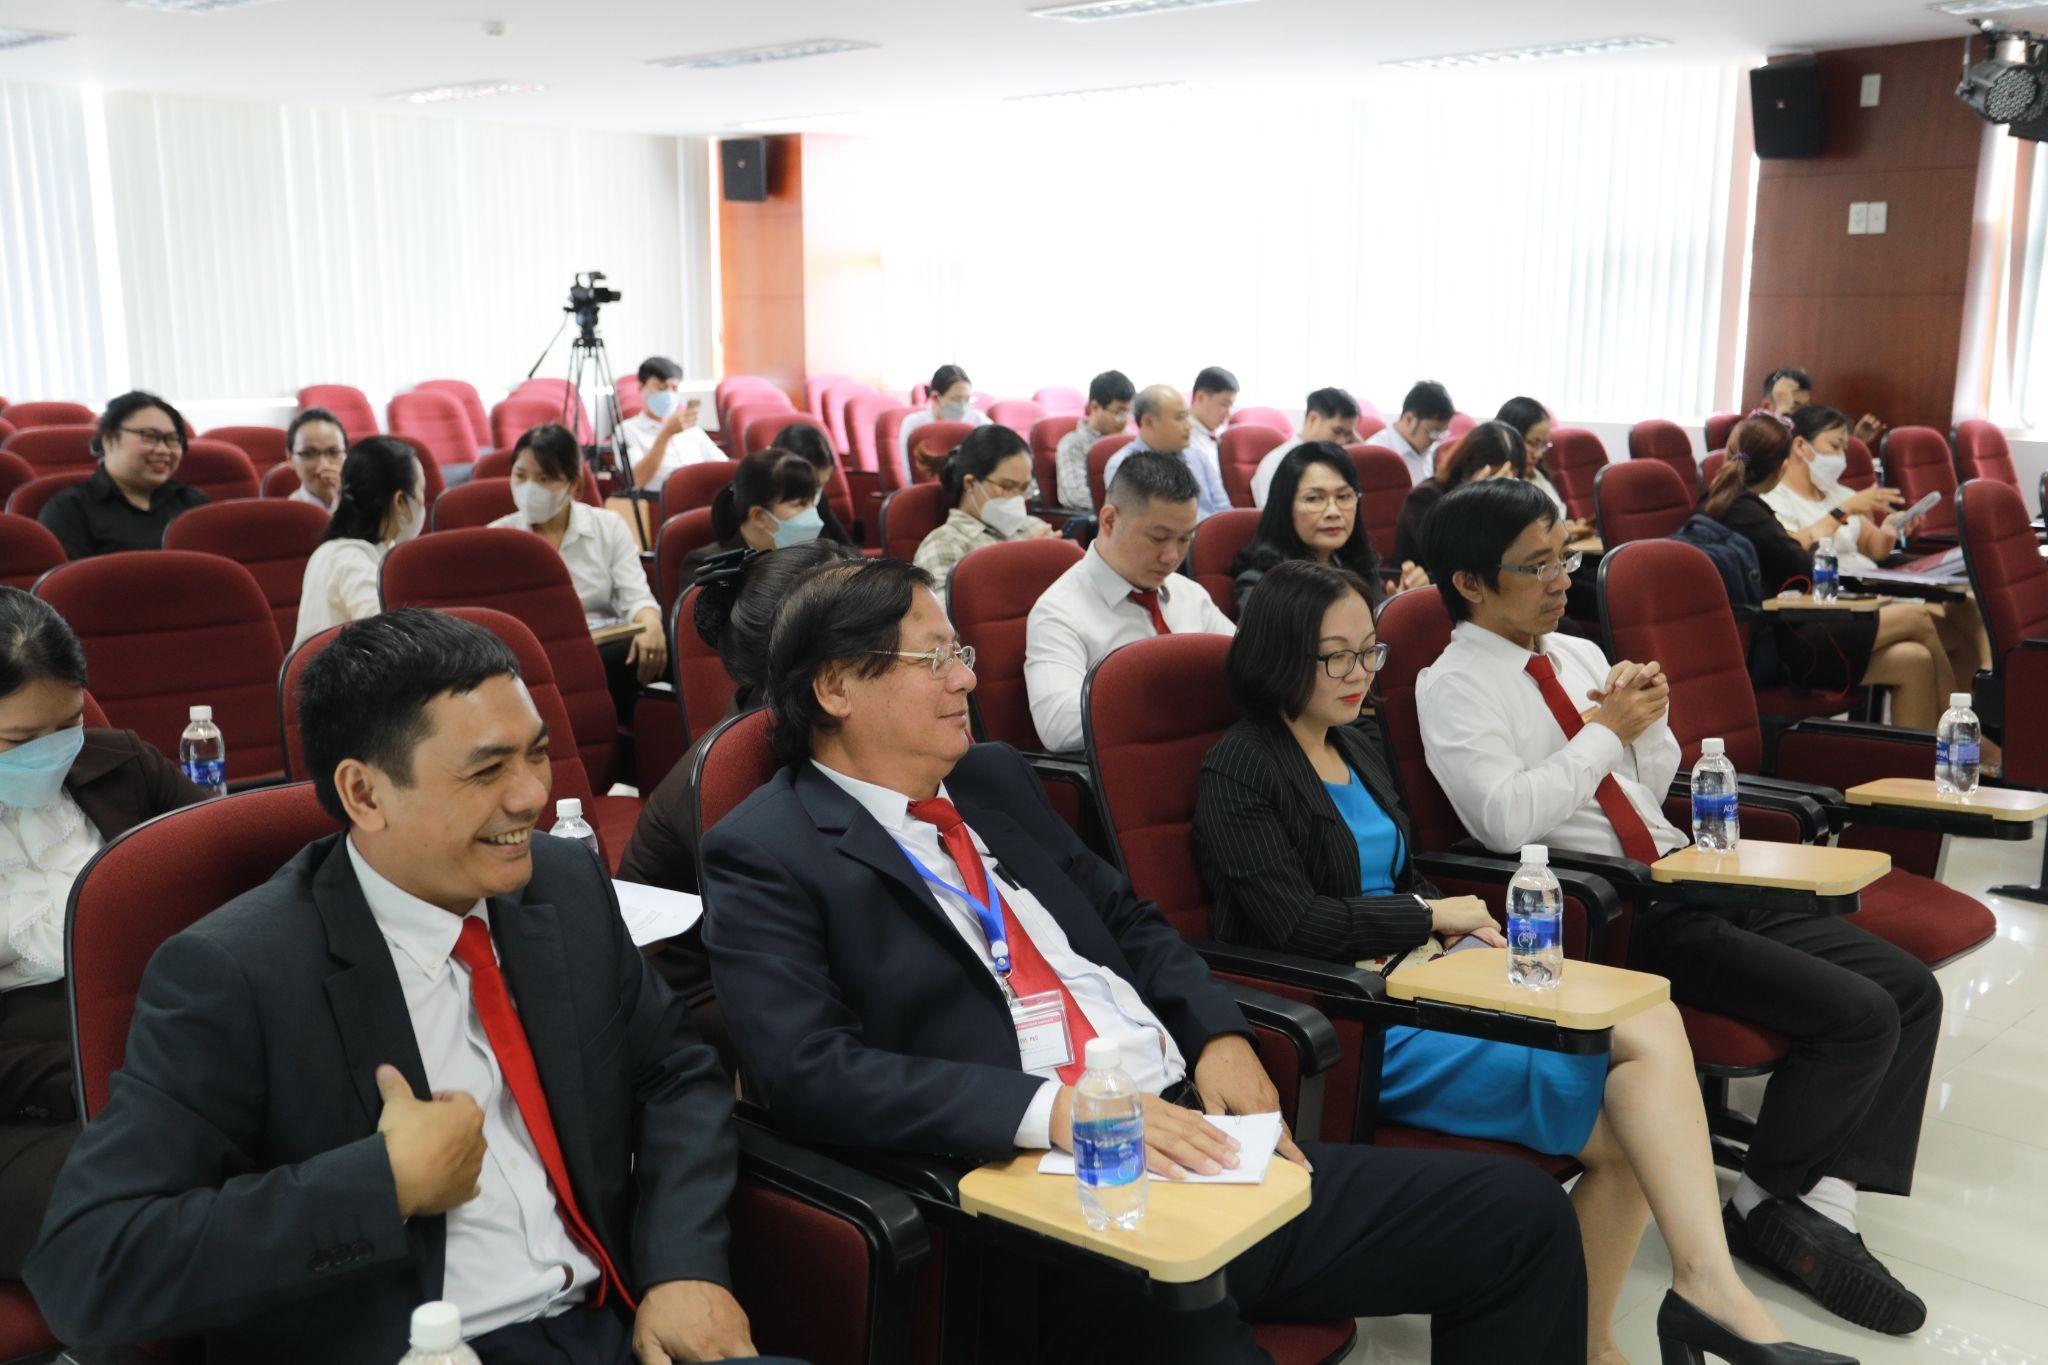 SIU tổ chức Lễ khai giảng Chương trình đào tạo trình độ Thạc sĩ đợt 1 năm 2022